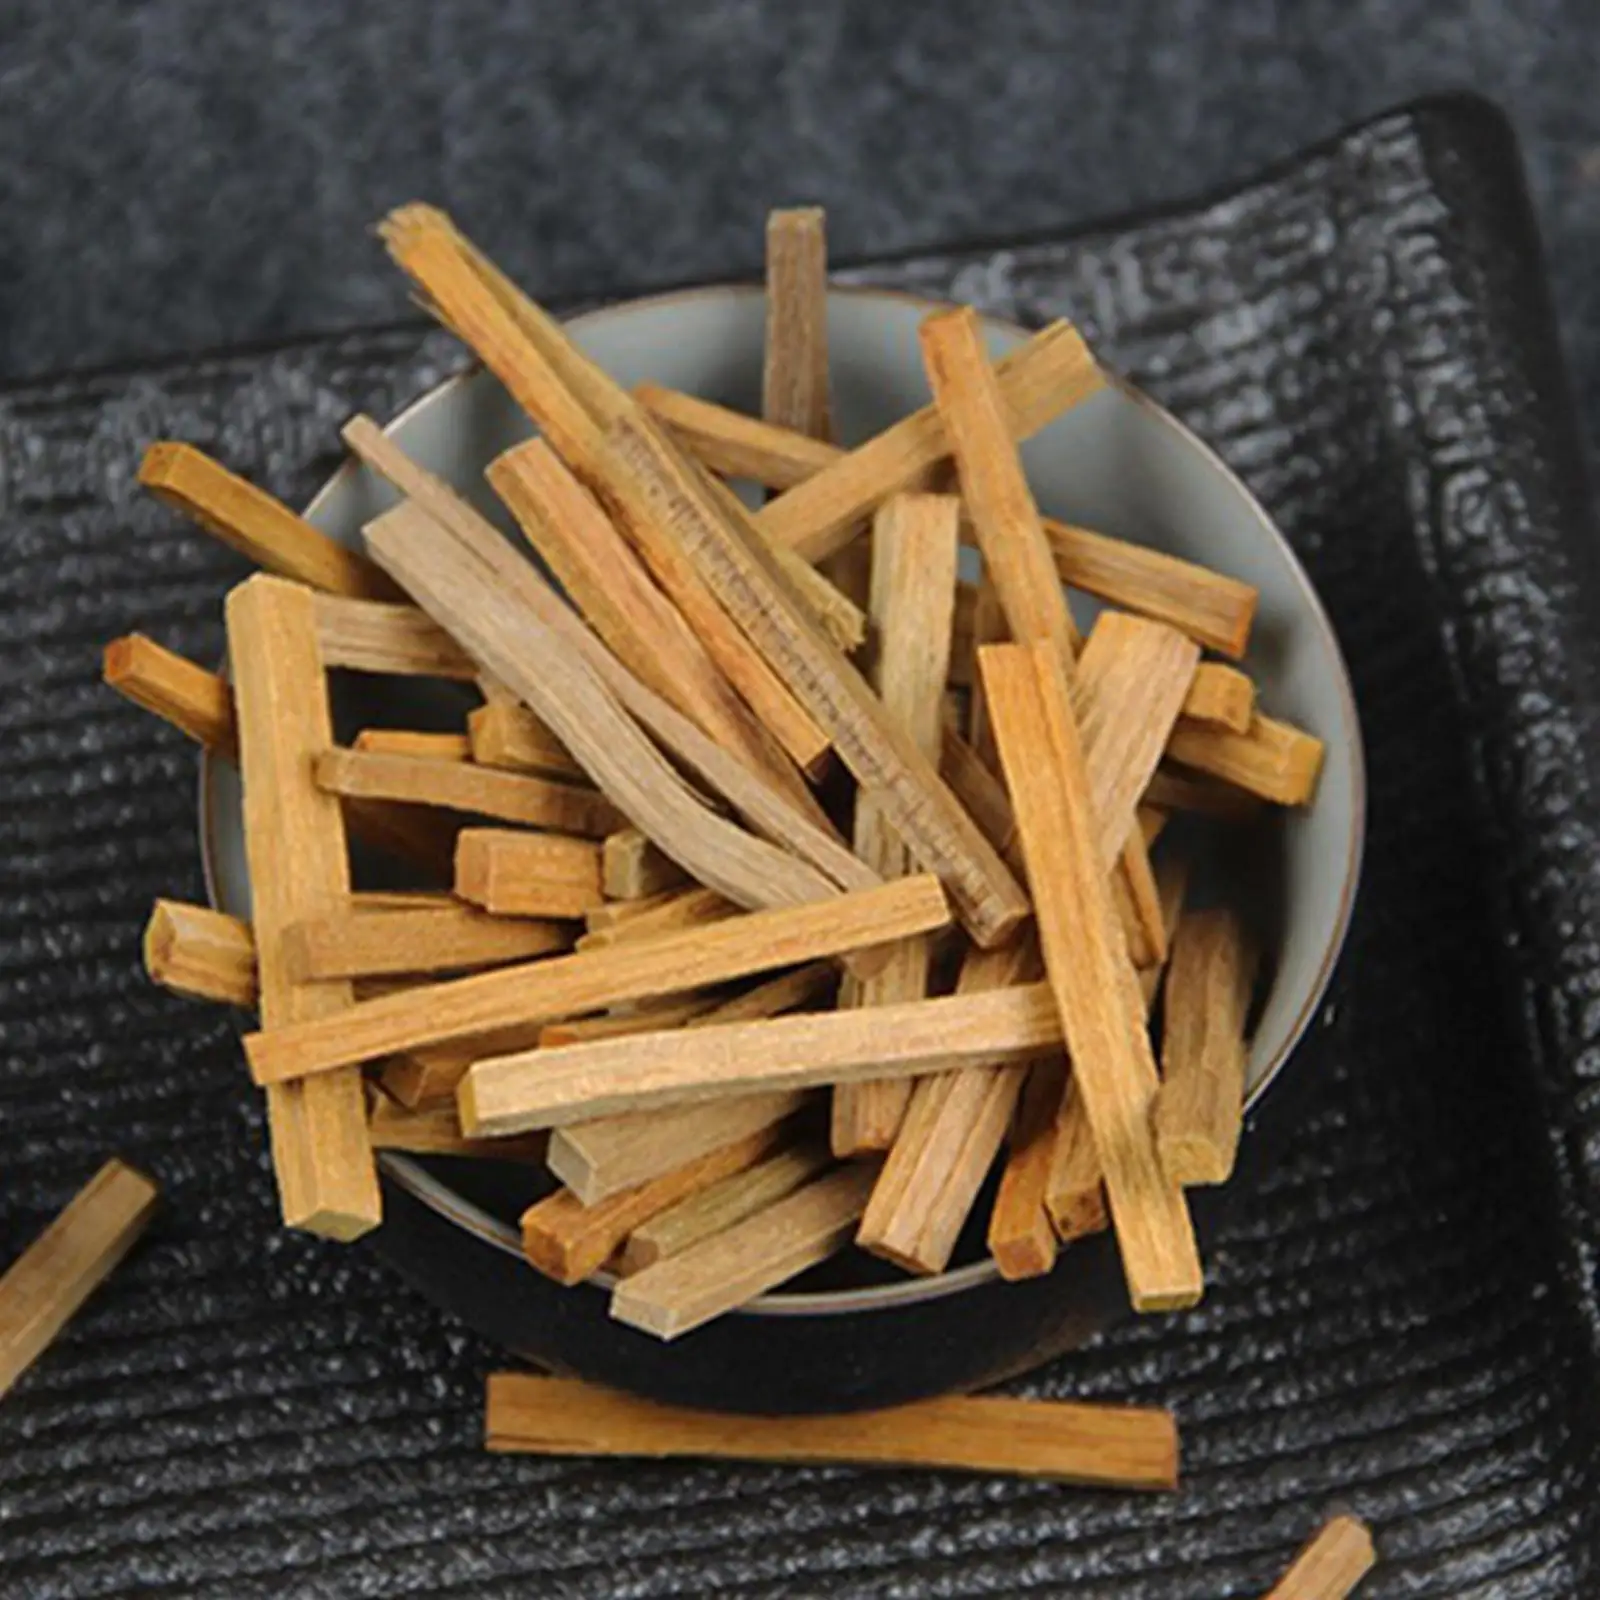 Santal Incense Sticks Incense Smudge Sticks for Meditation Remedying Yoga